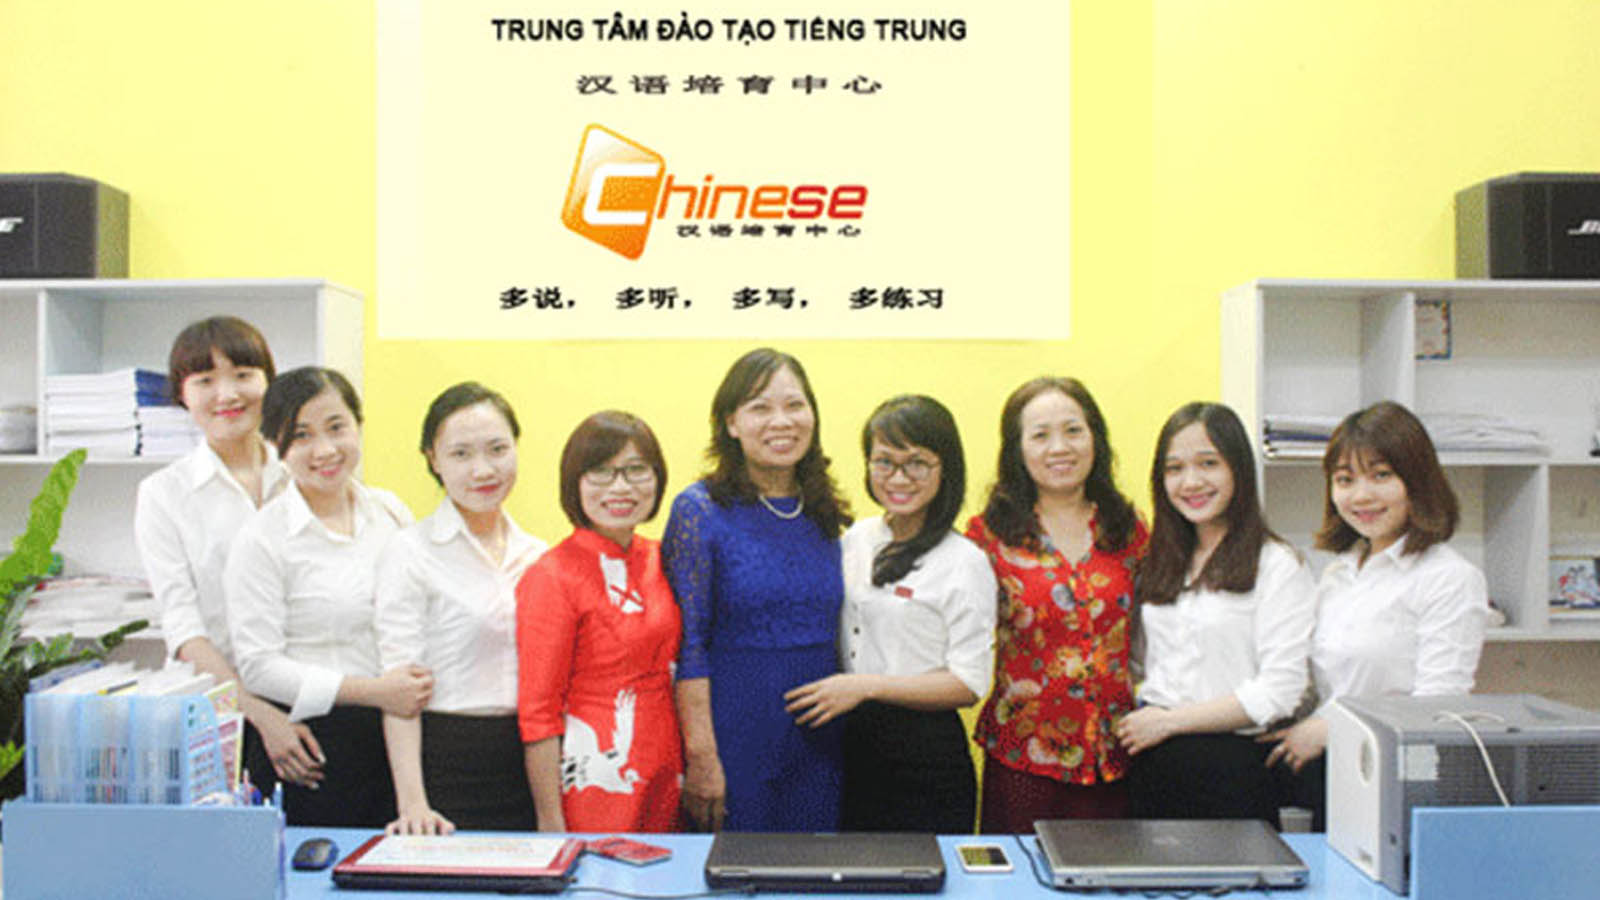 Chinese - Trung tâm đào tạo và luyện thi chứng chỉ HSK uy tín tại Hà Nội